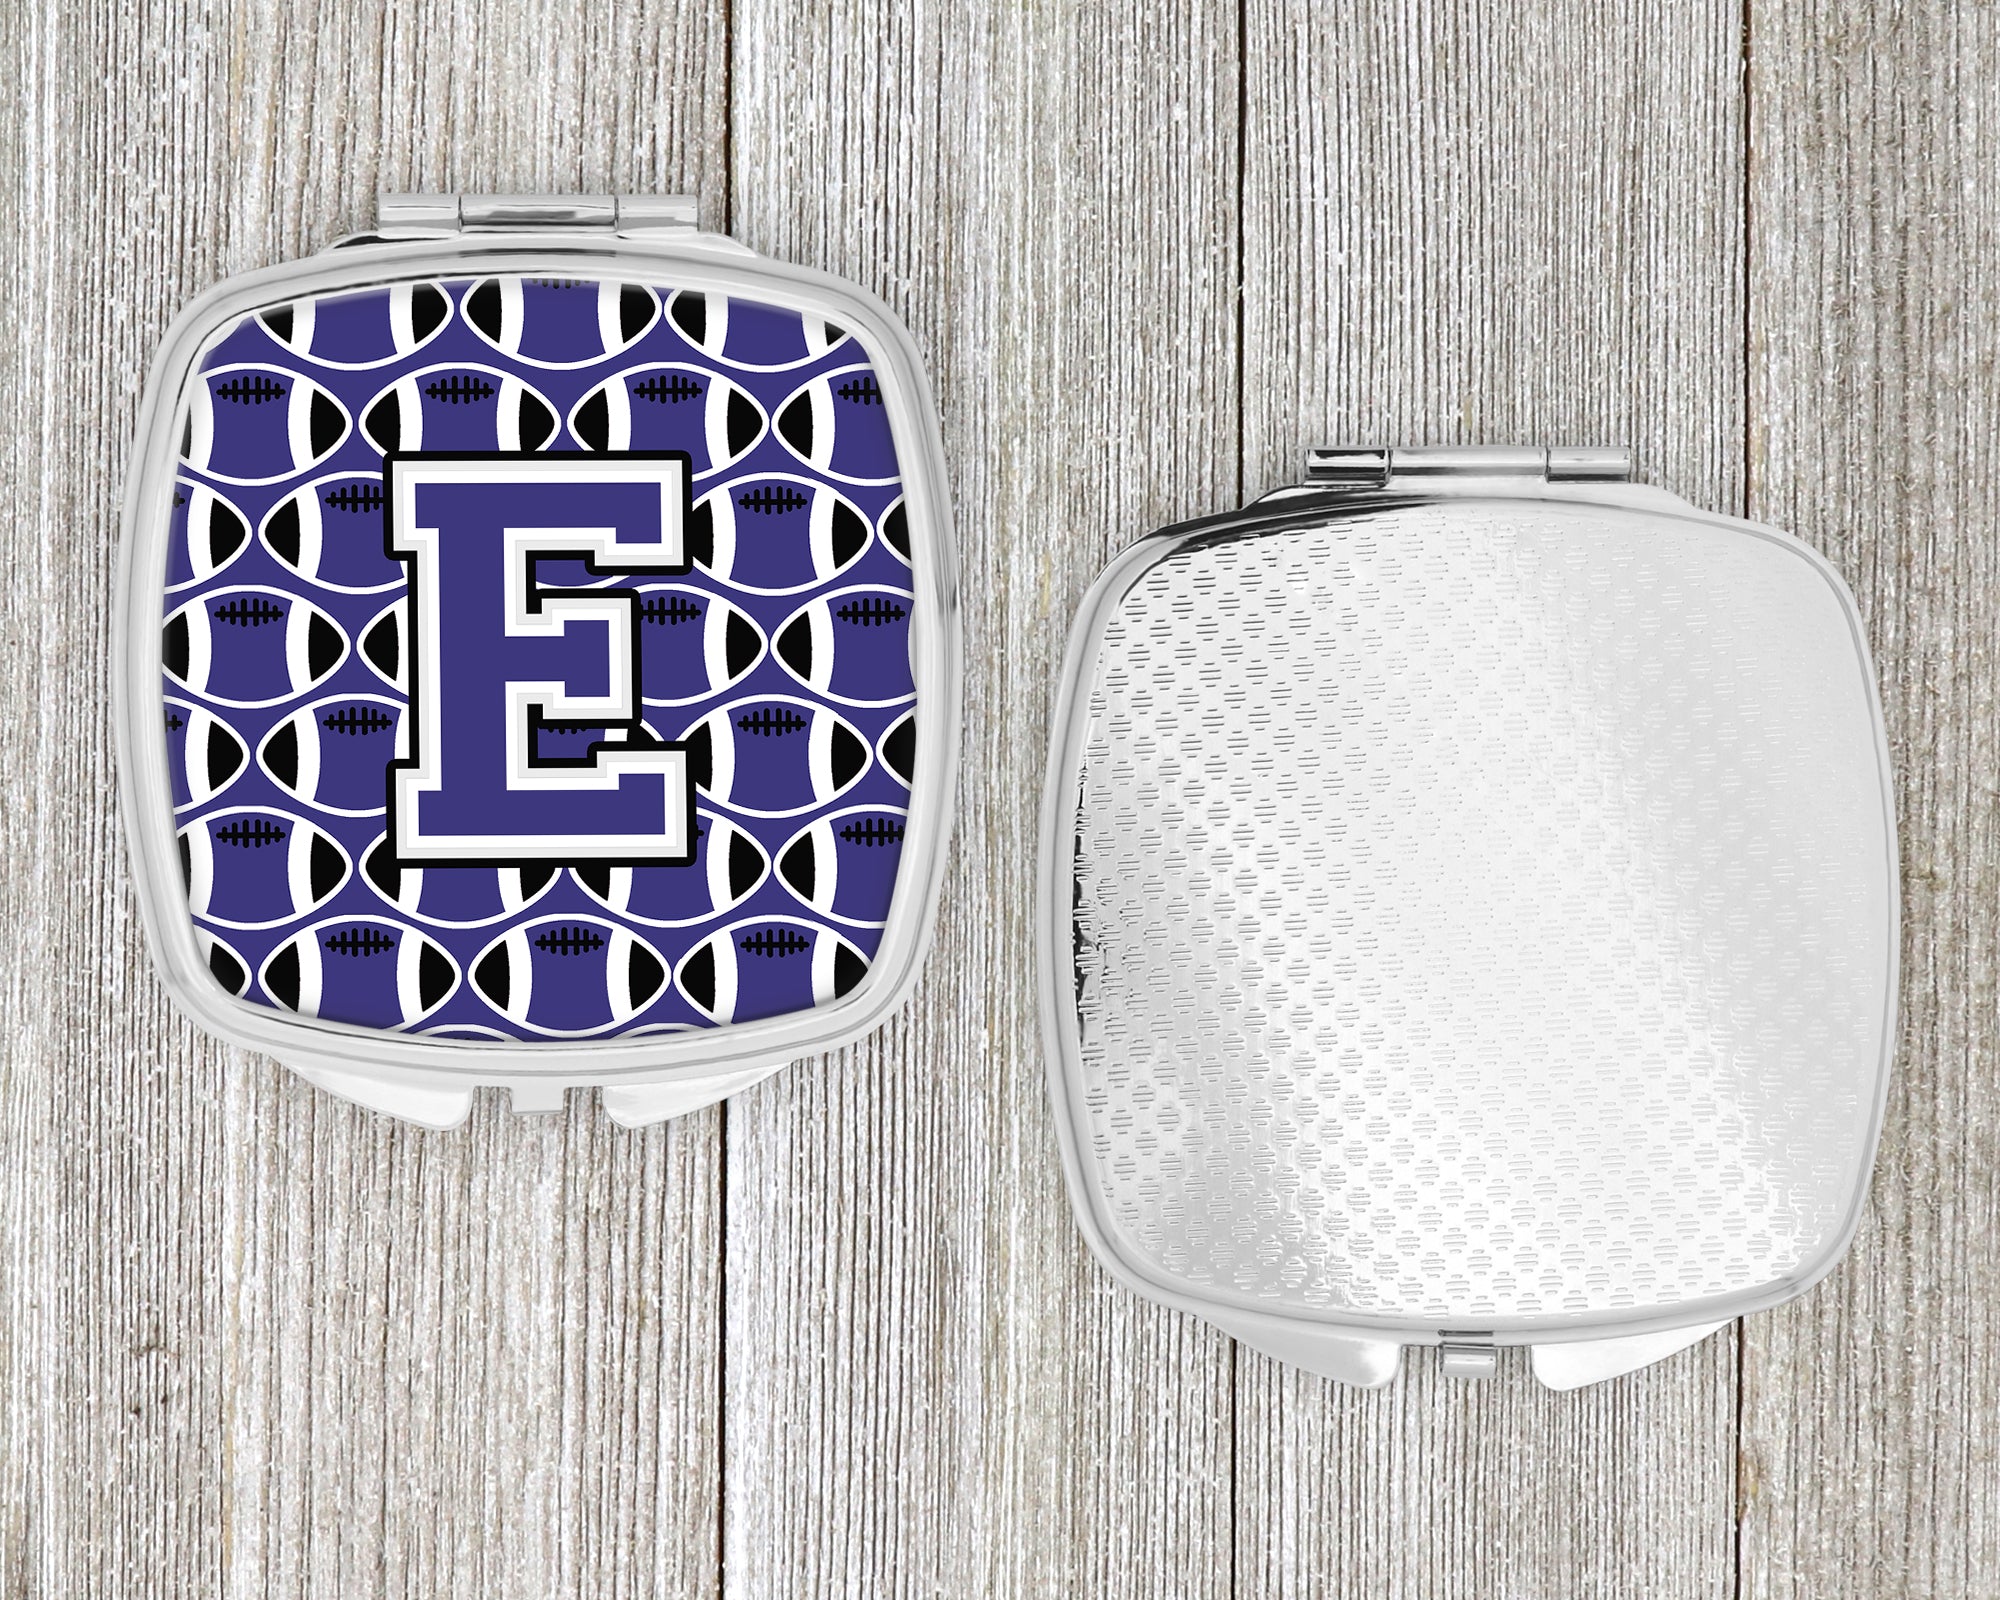 Letter E Football Purple and White Compact Mirror CJ1068-ESCM  the-store.com.